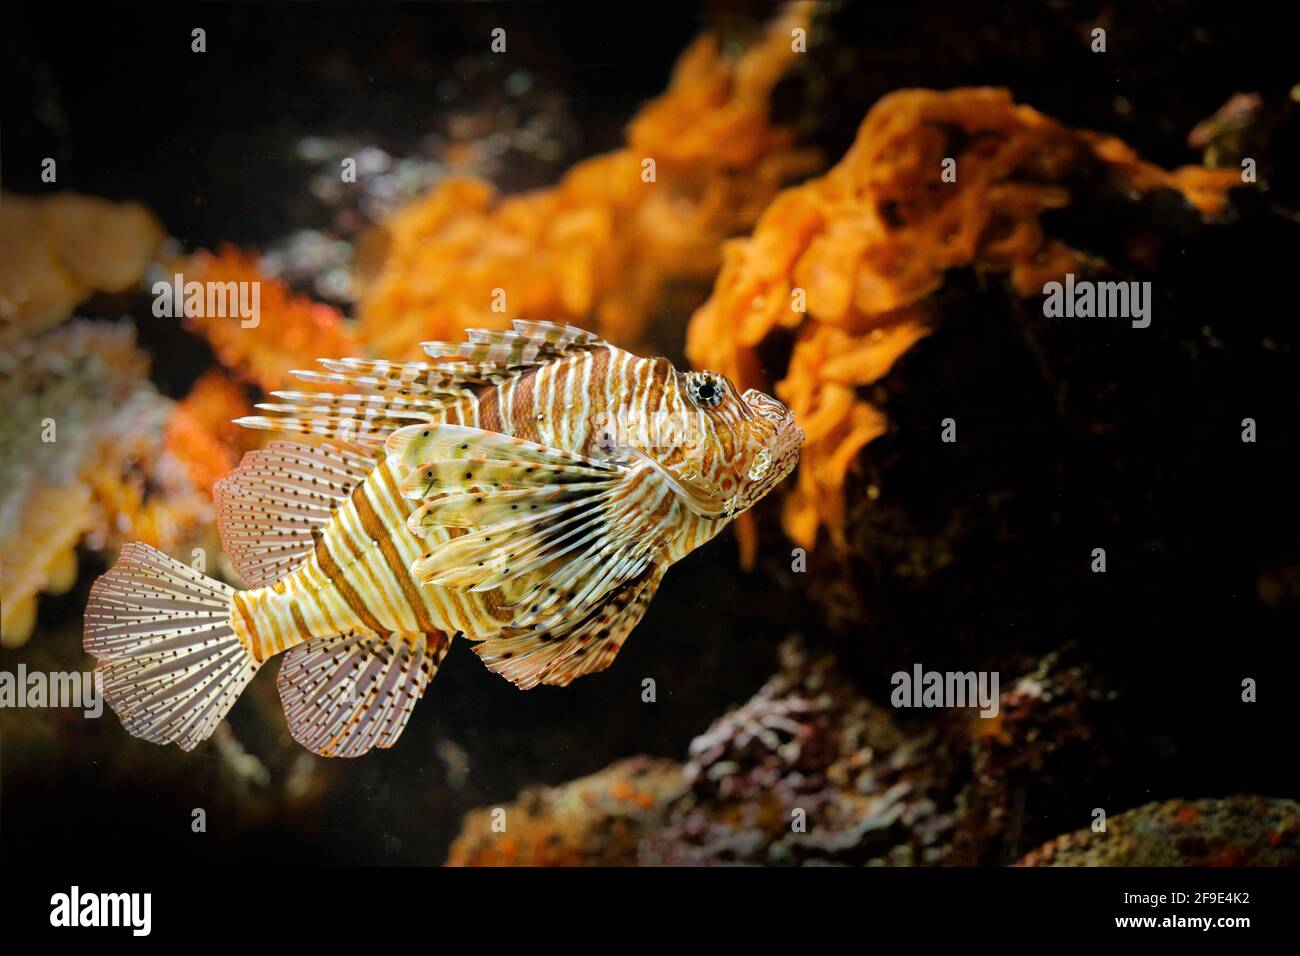 Pterois volitans, Red Lionfish, Gefahr Giftfisch im Meerwasser. Löwenfische im natürlichen Lebensraum Ozean. Unterwasserwelt. Stockfoto